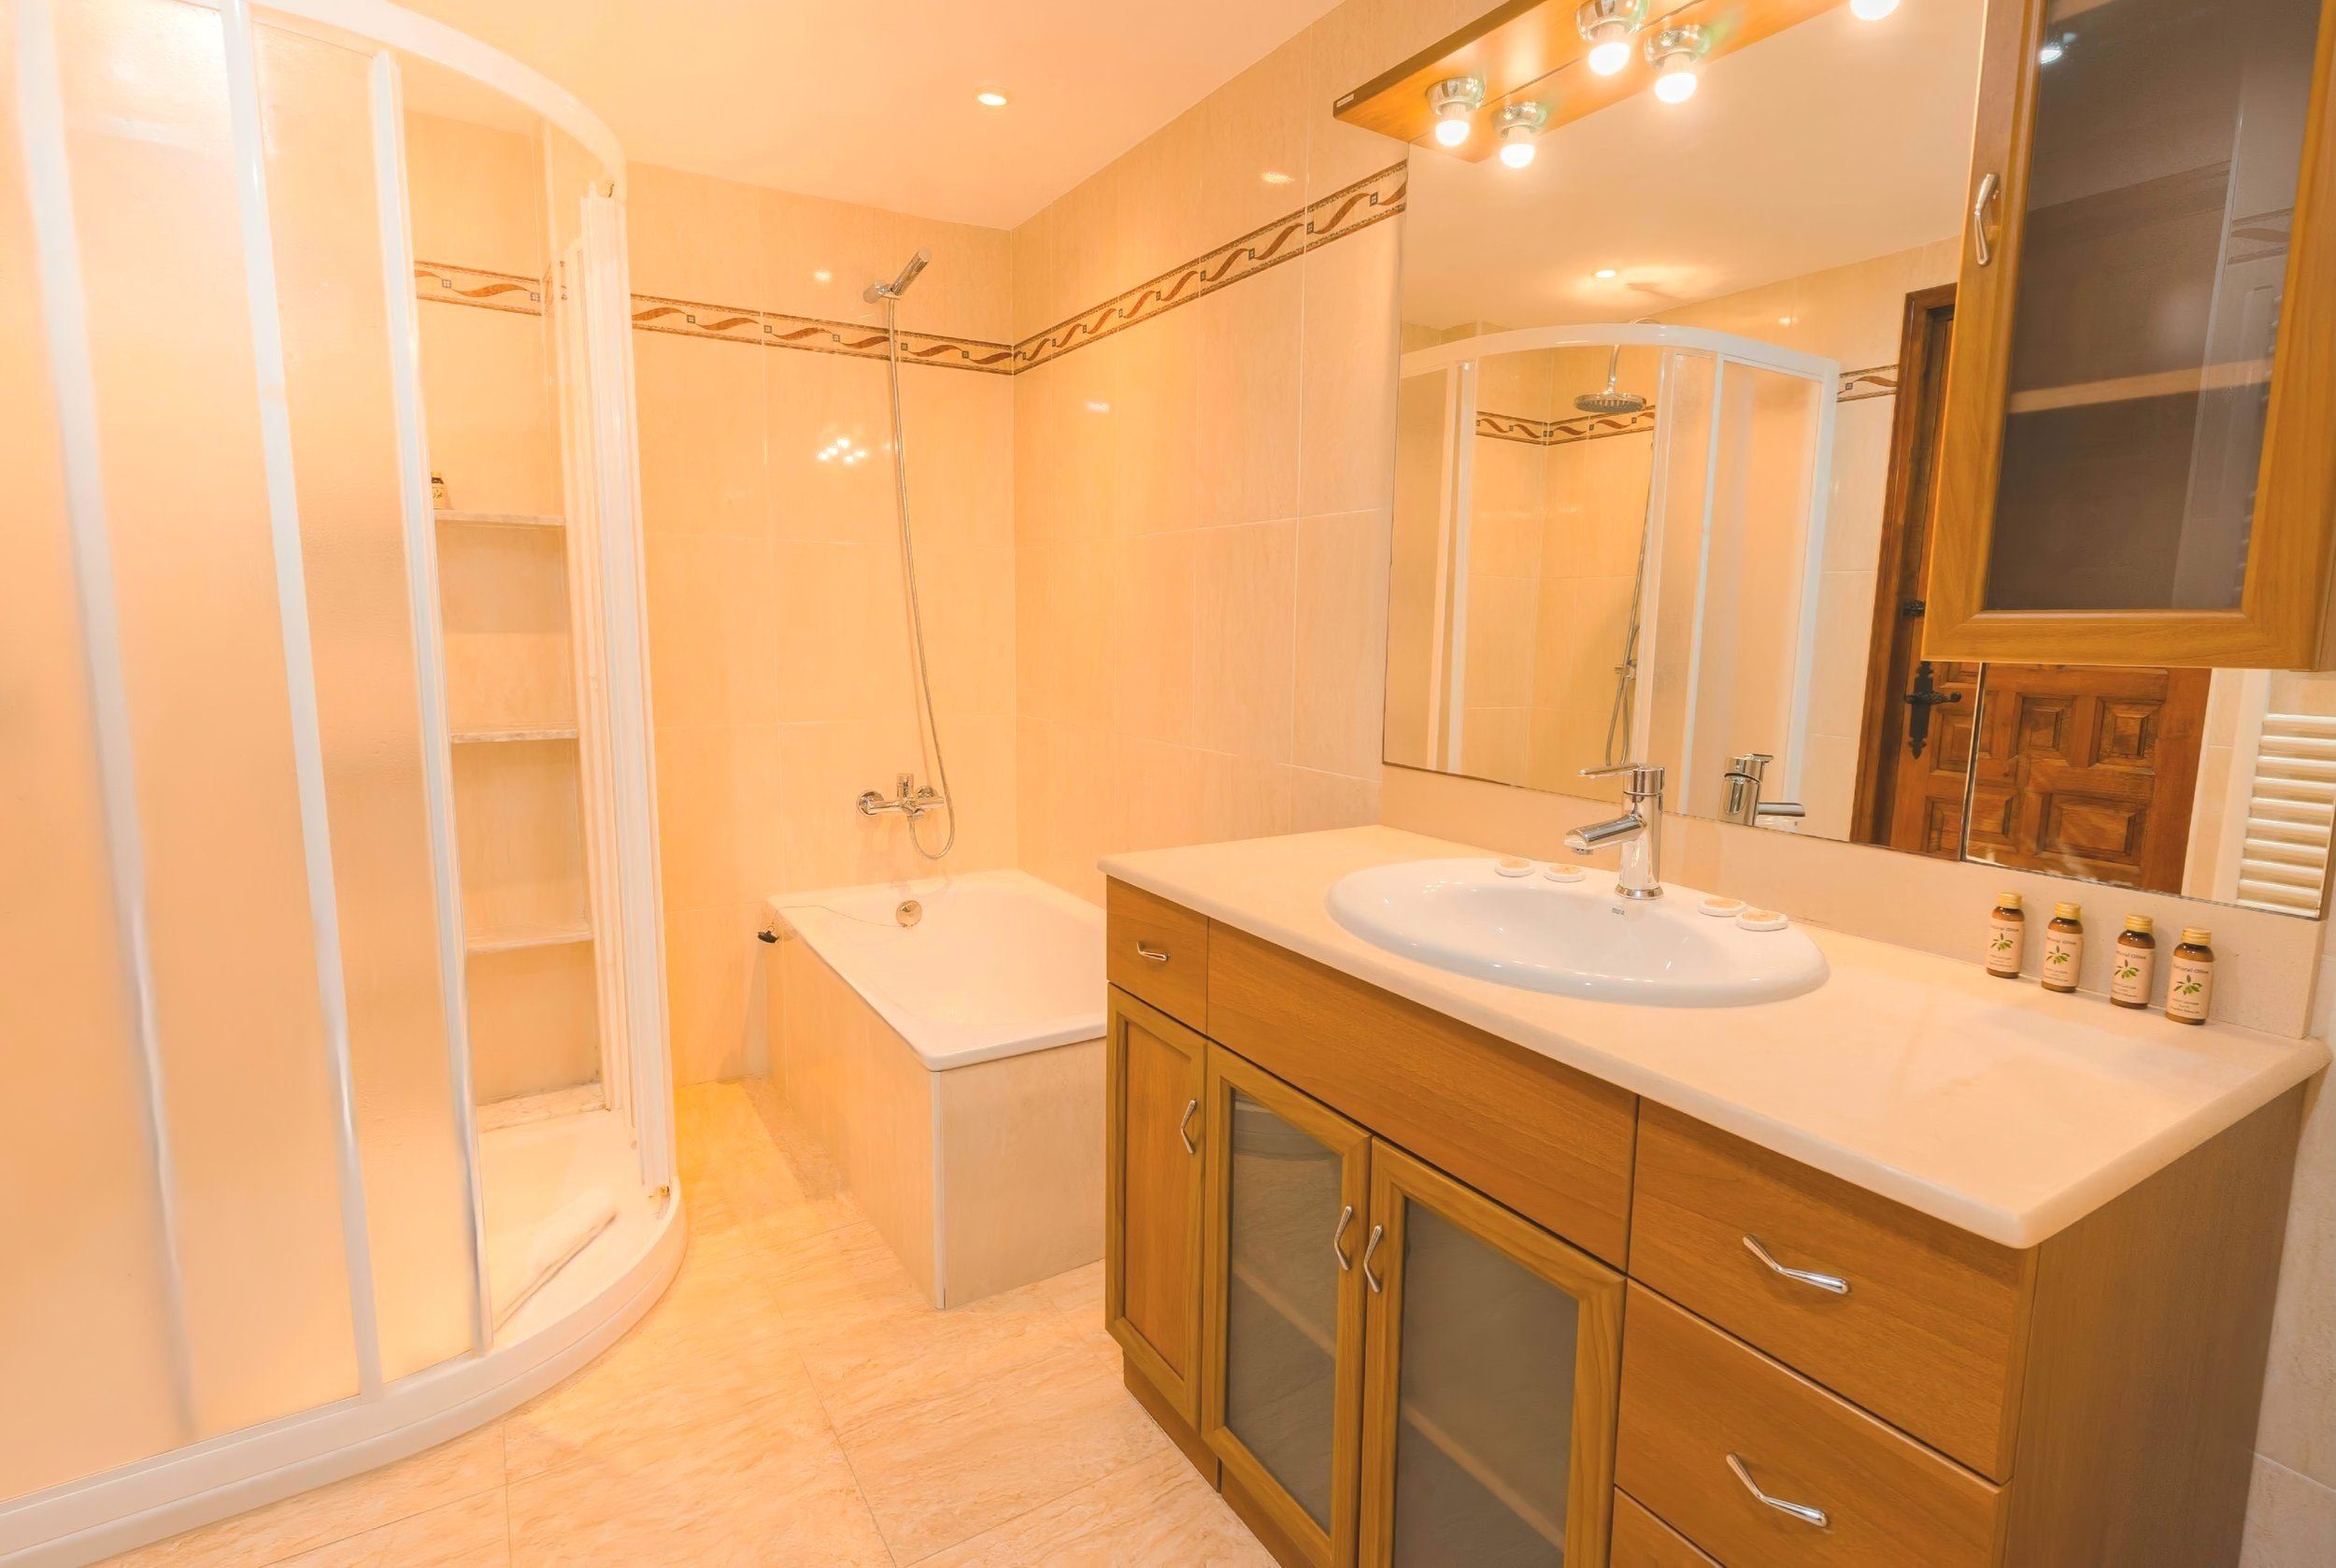 Casa principal Planta baja Cuarto de baño con ducha, bañera, lavabo y un gran espejo con luces cenitales 